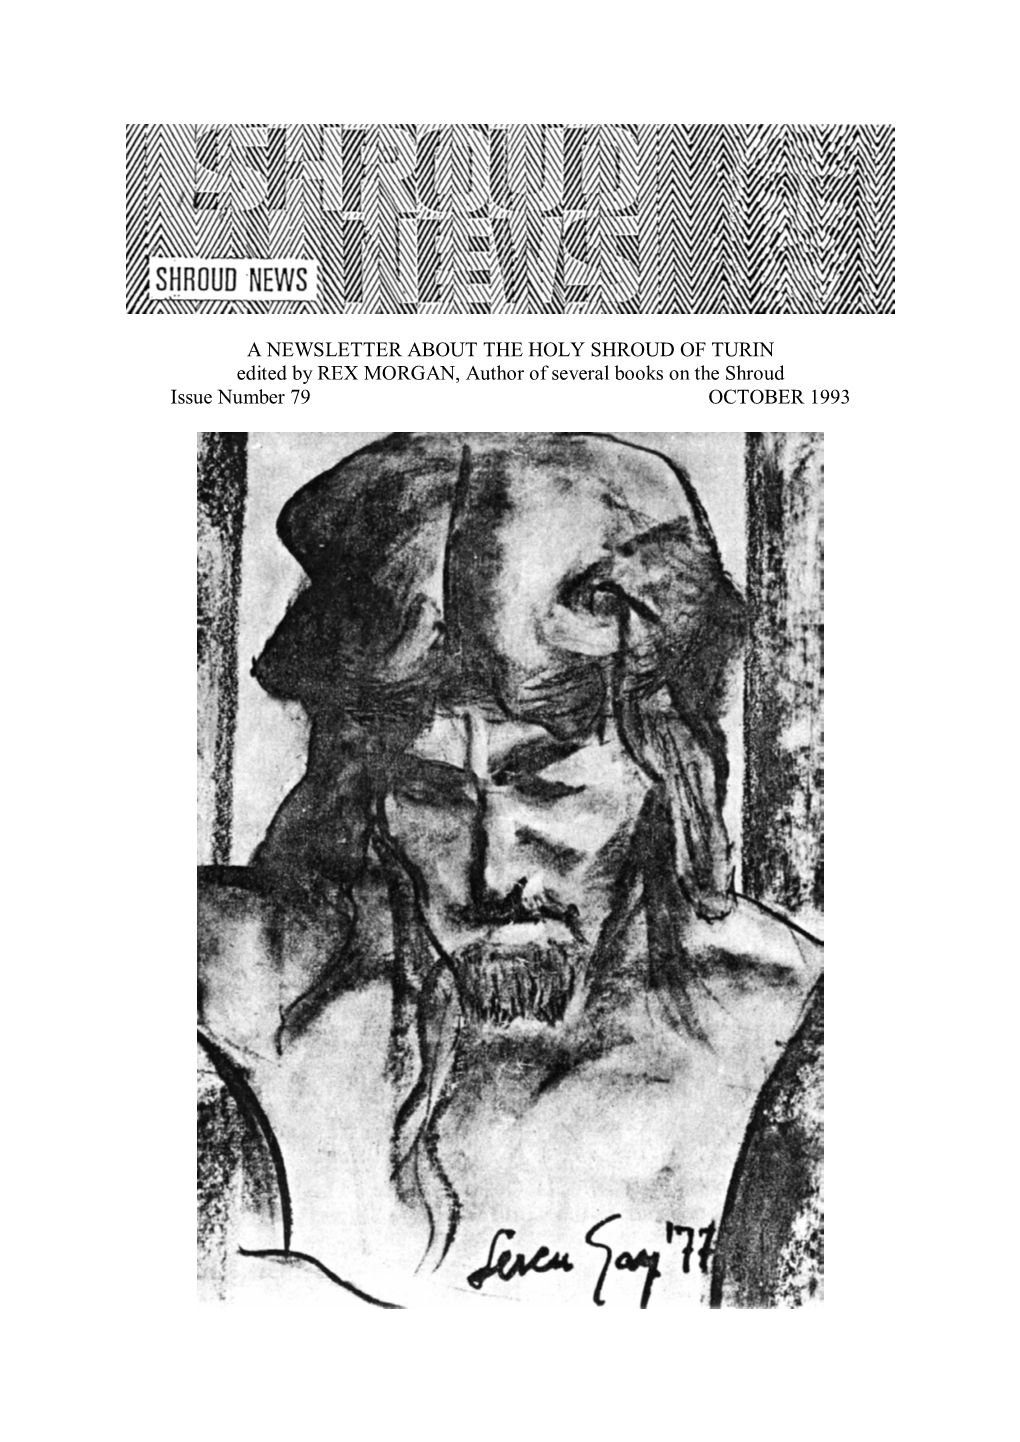 Shroud News Issue #79 October 1993